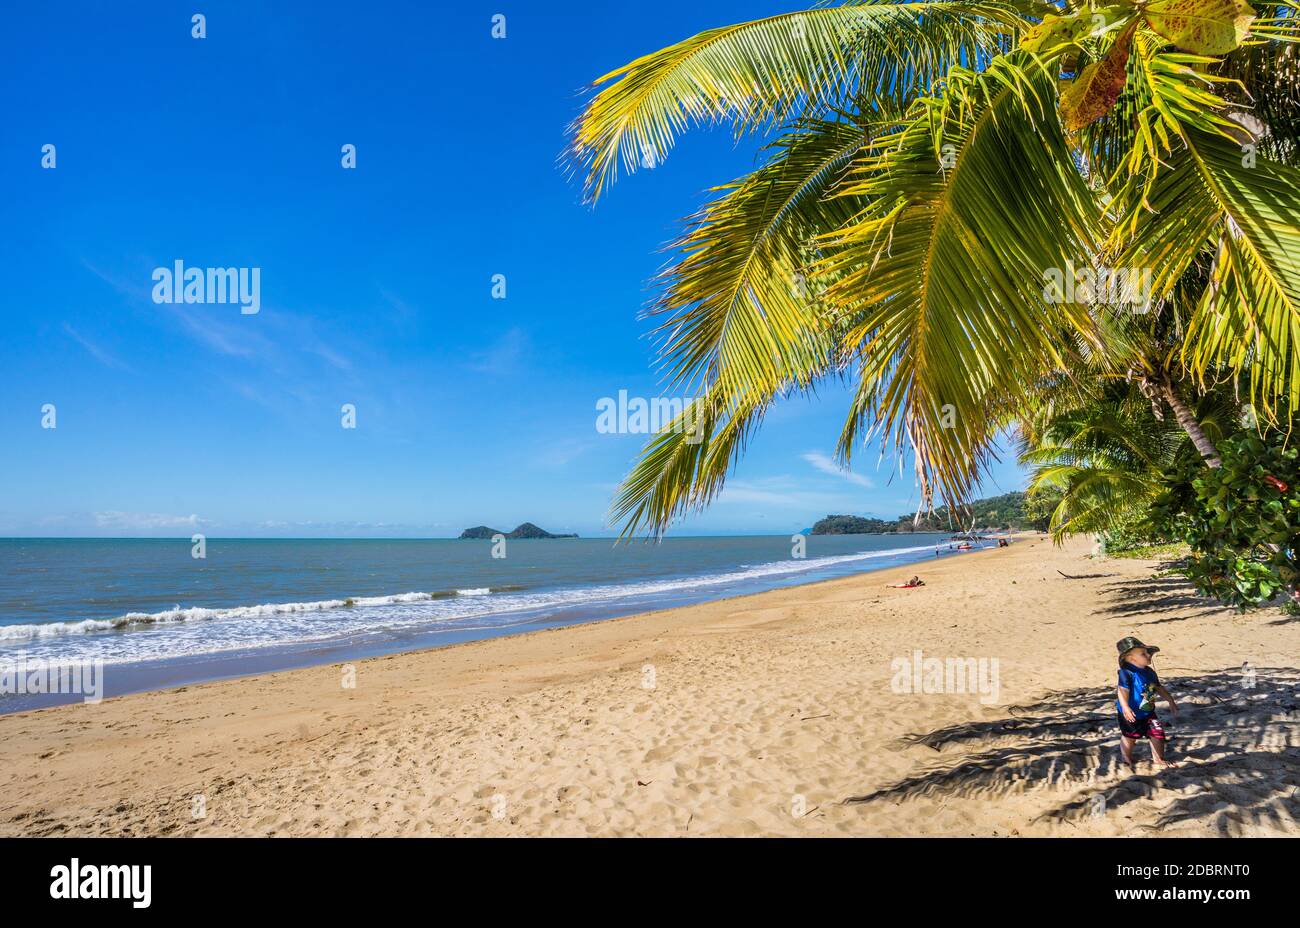 Plage idyllique sur la côte de la mer de Corail entre Port Douglas et Cairns avec vue sur Double Island, parc marin de la Grande barrière de corail, North Queenslan Banque D'Images